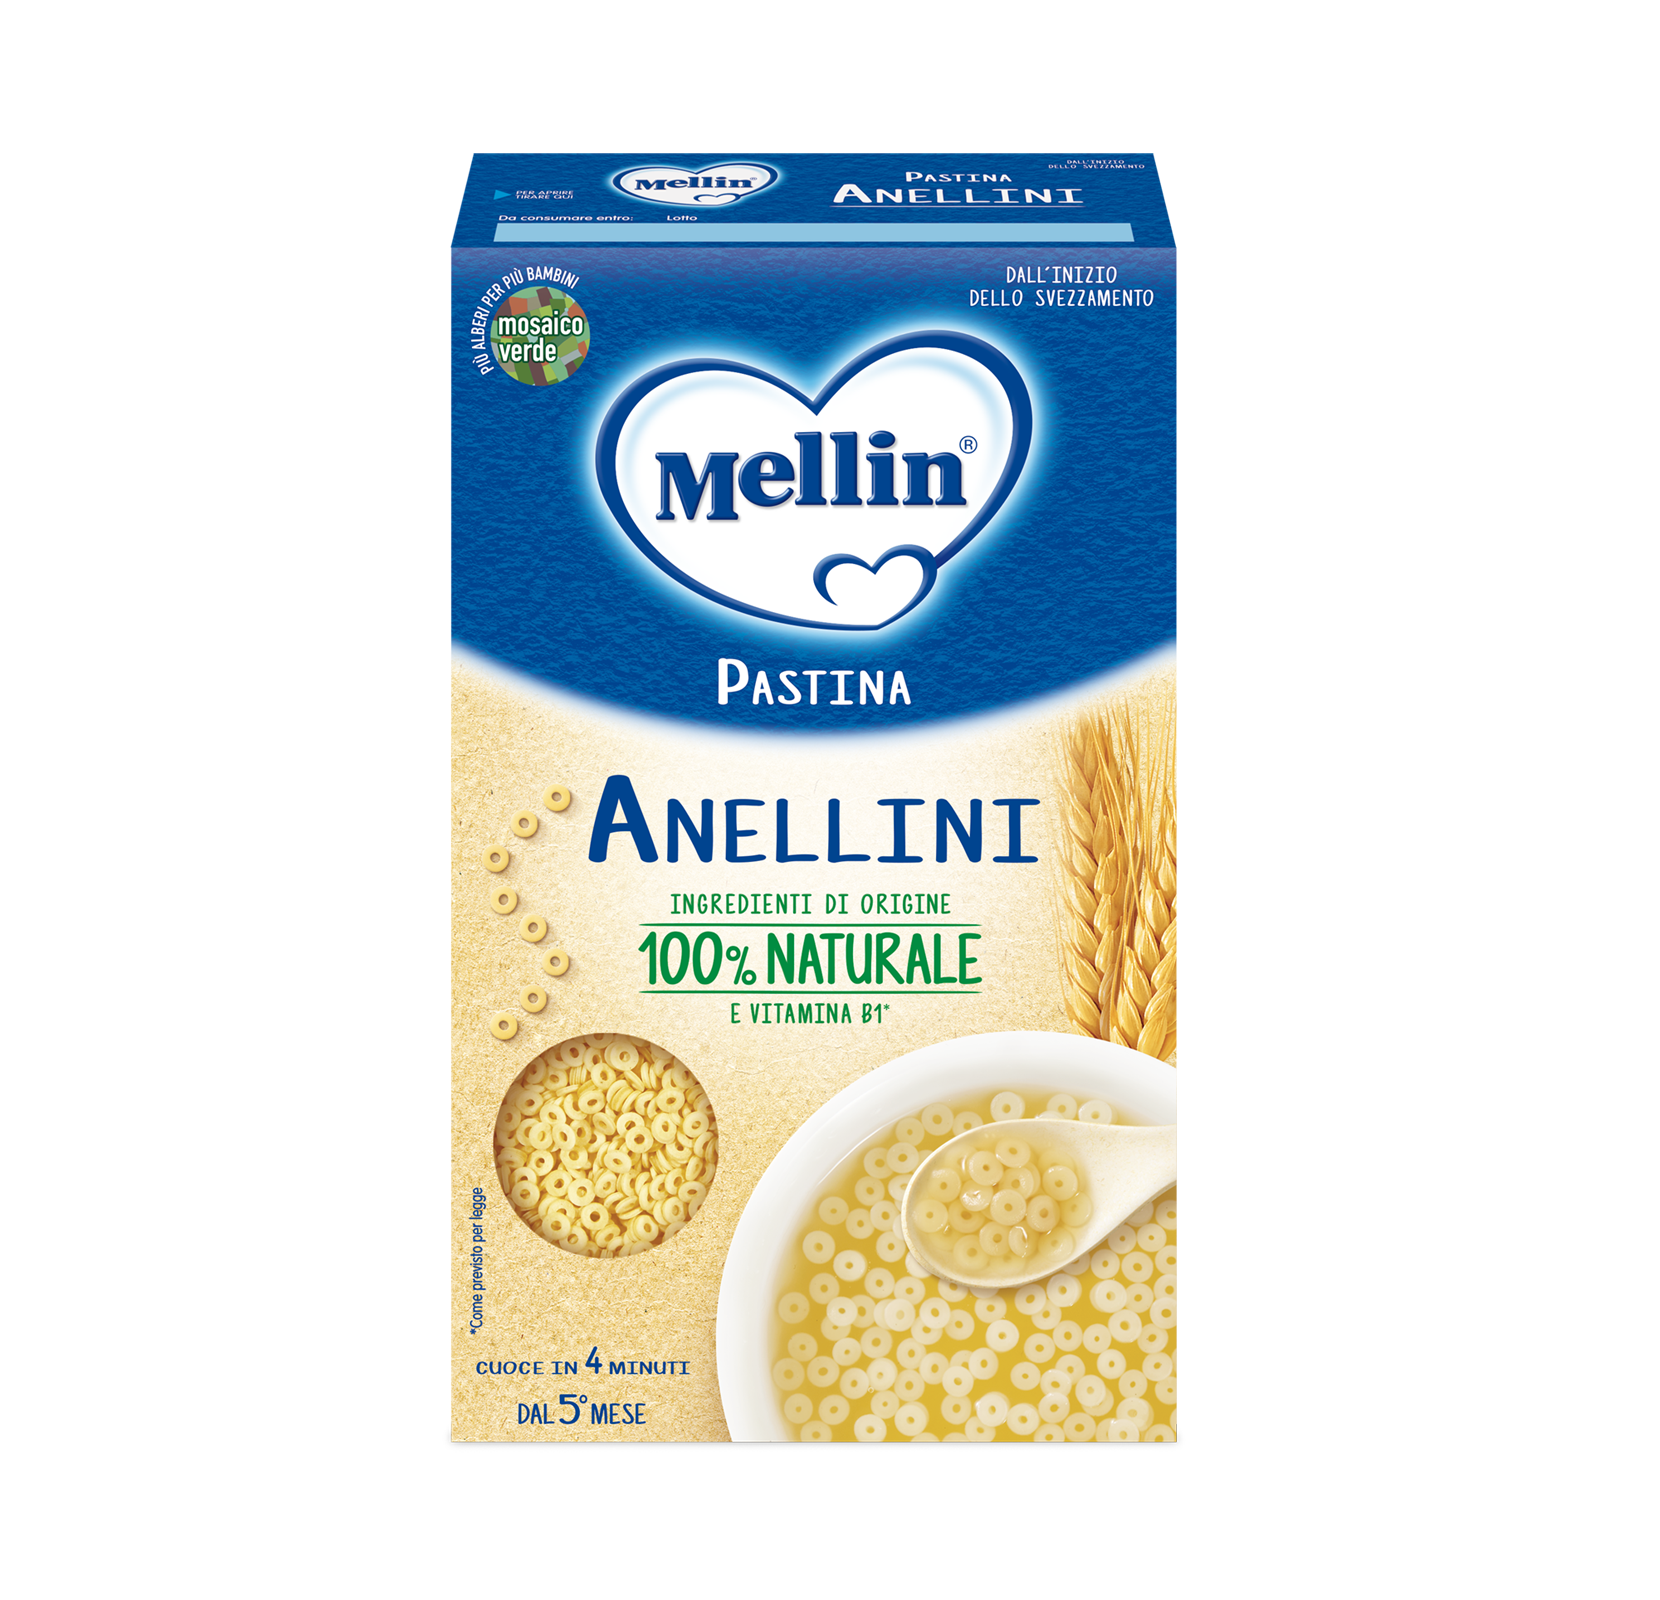 Anellini Confezione da 320 grammi | Mellin